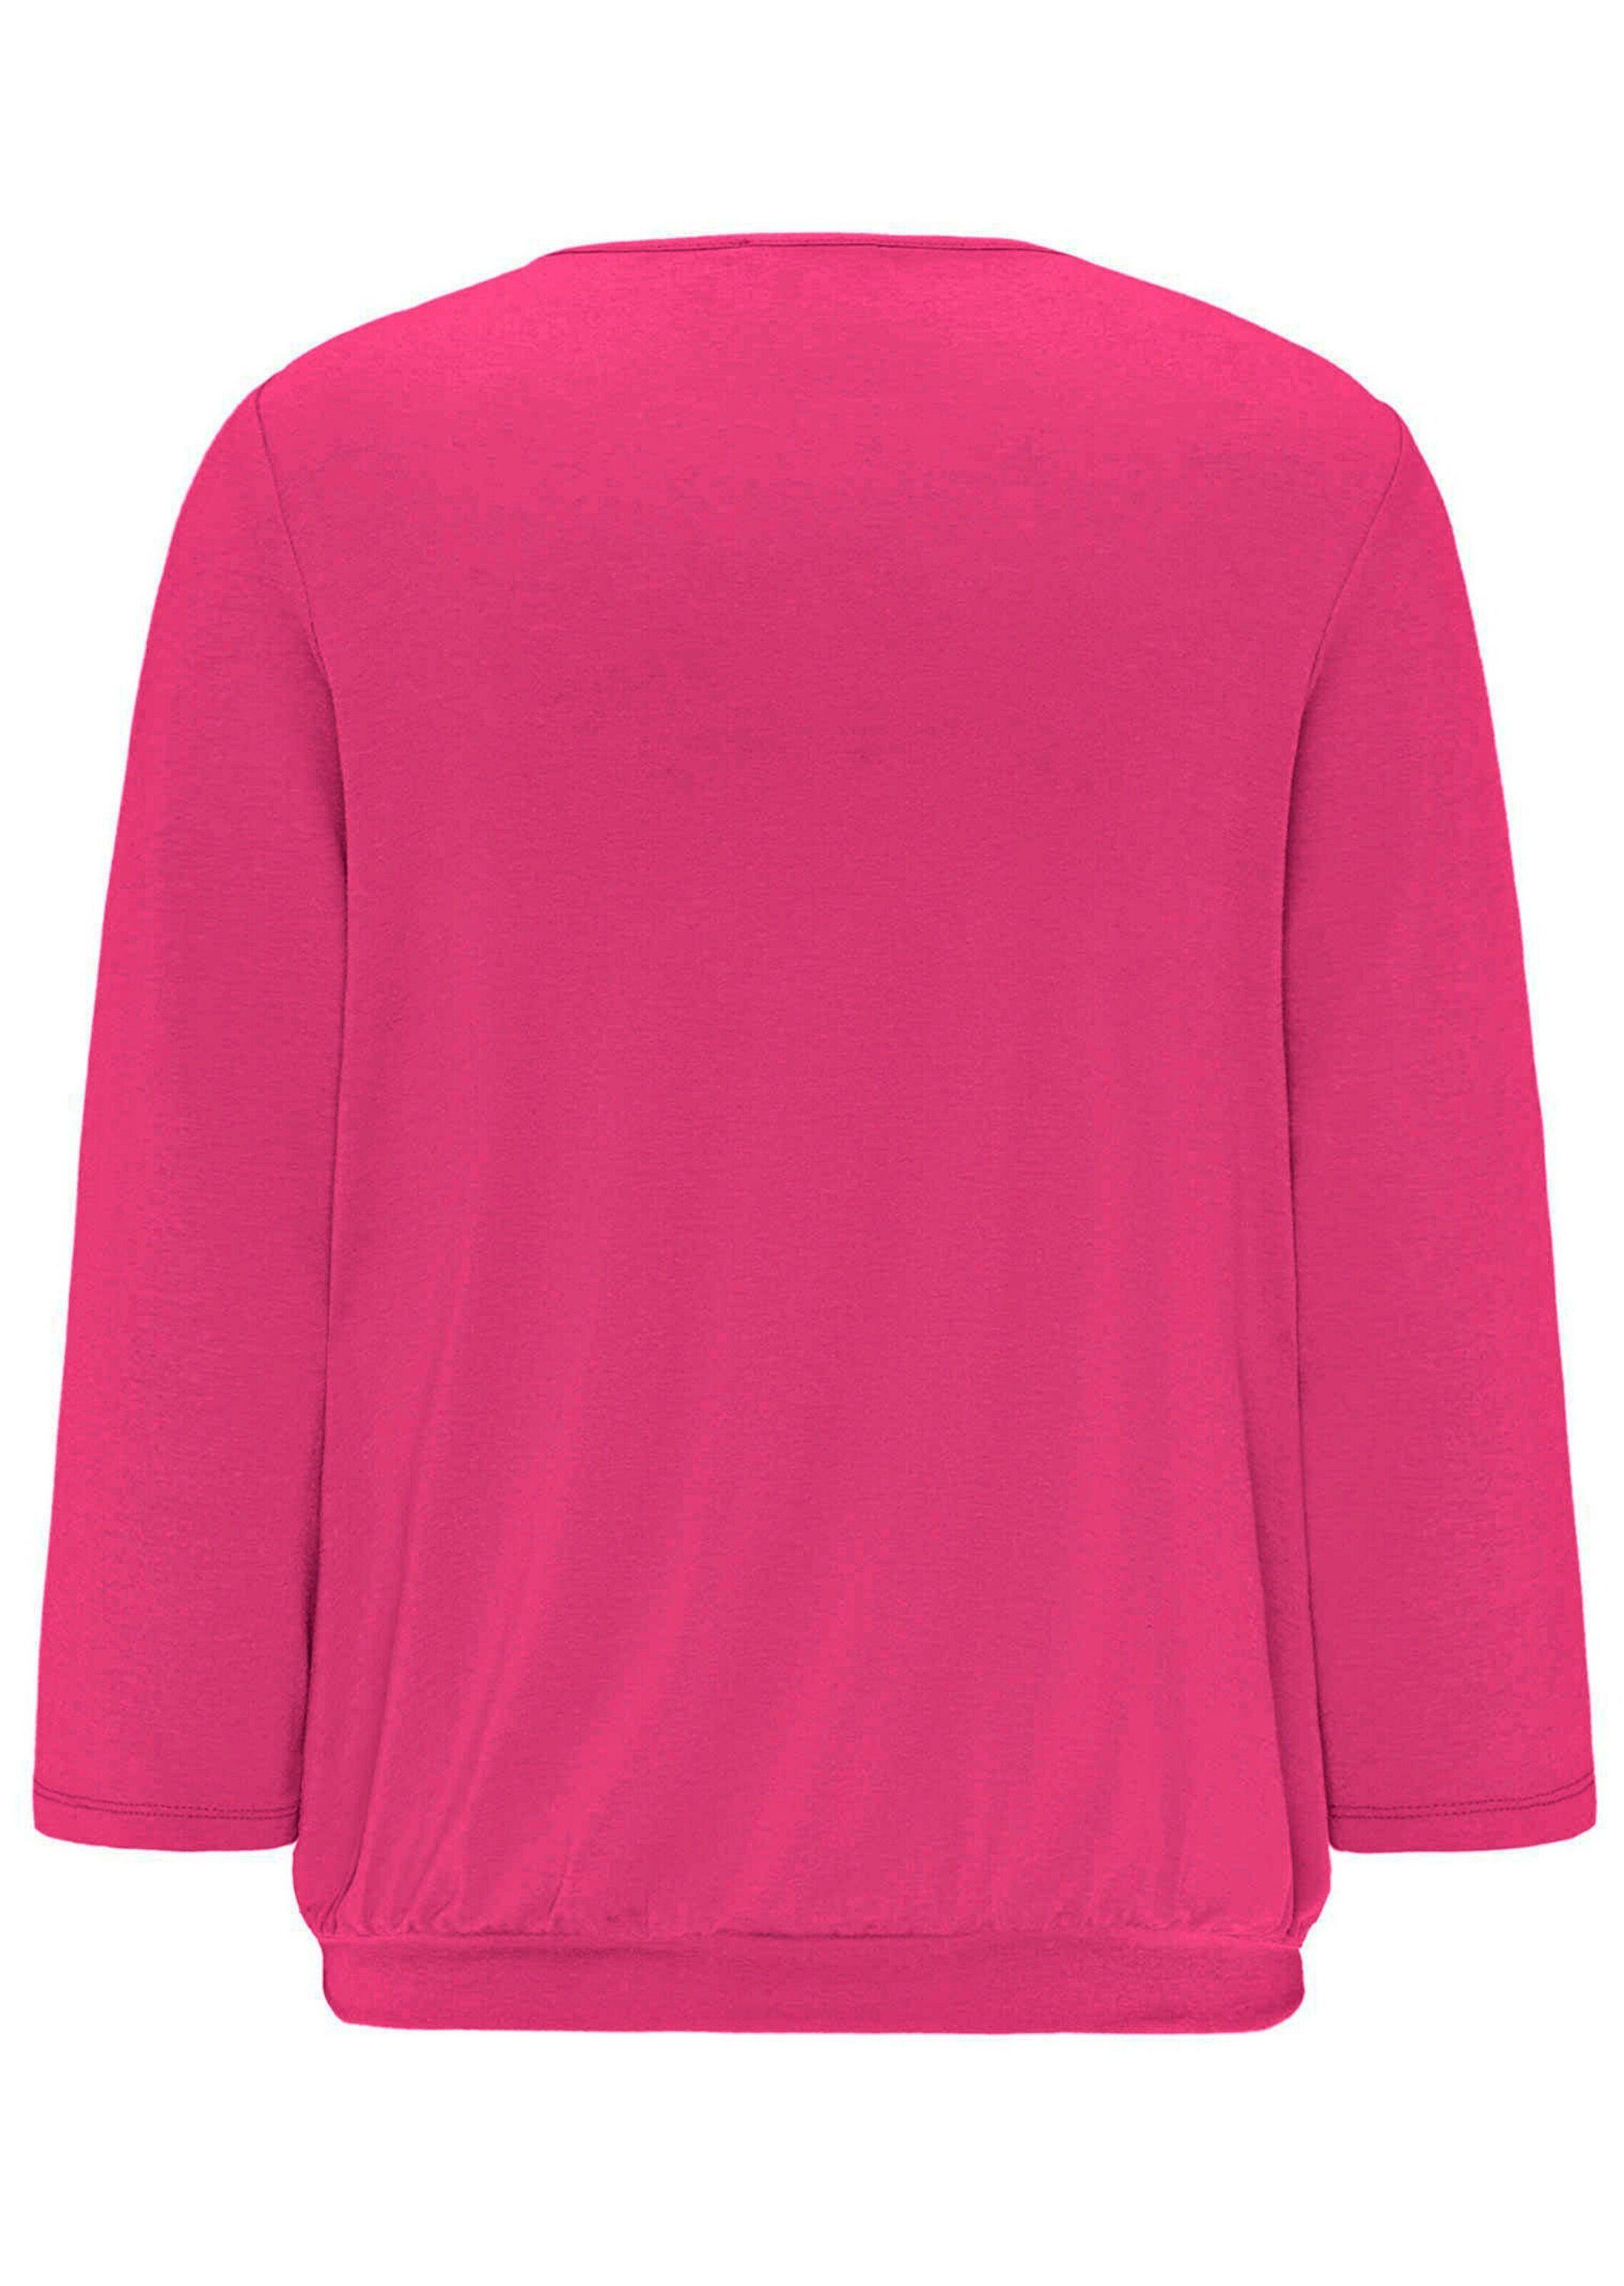 GOLDNER Kurzarmbluse Gepflegtes Shirt pink eleganter Blusen-Optik in